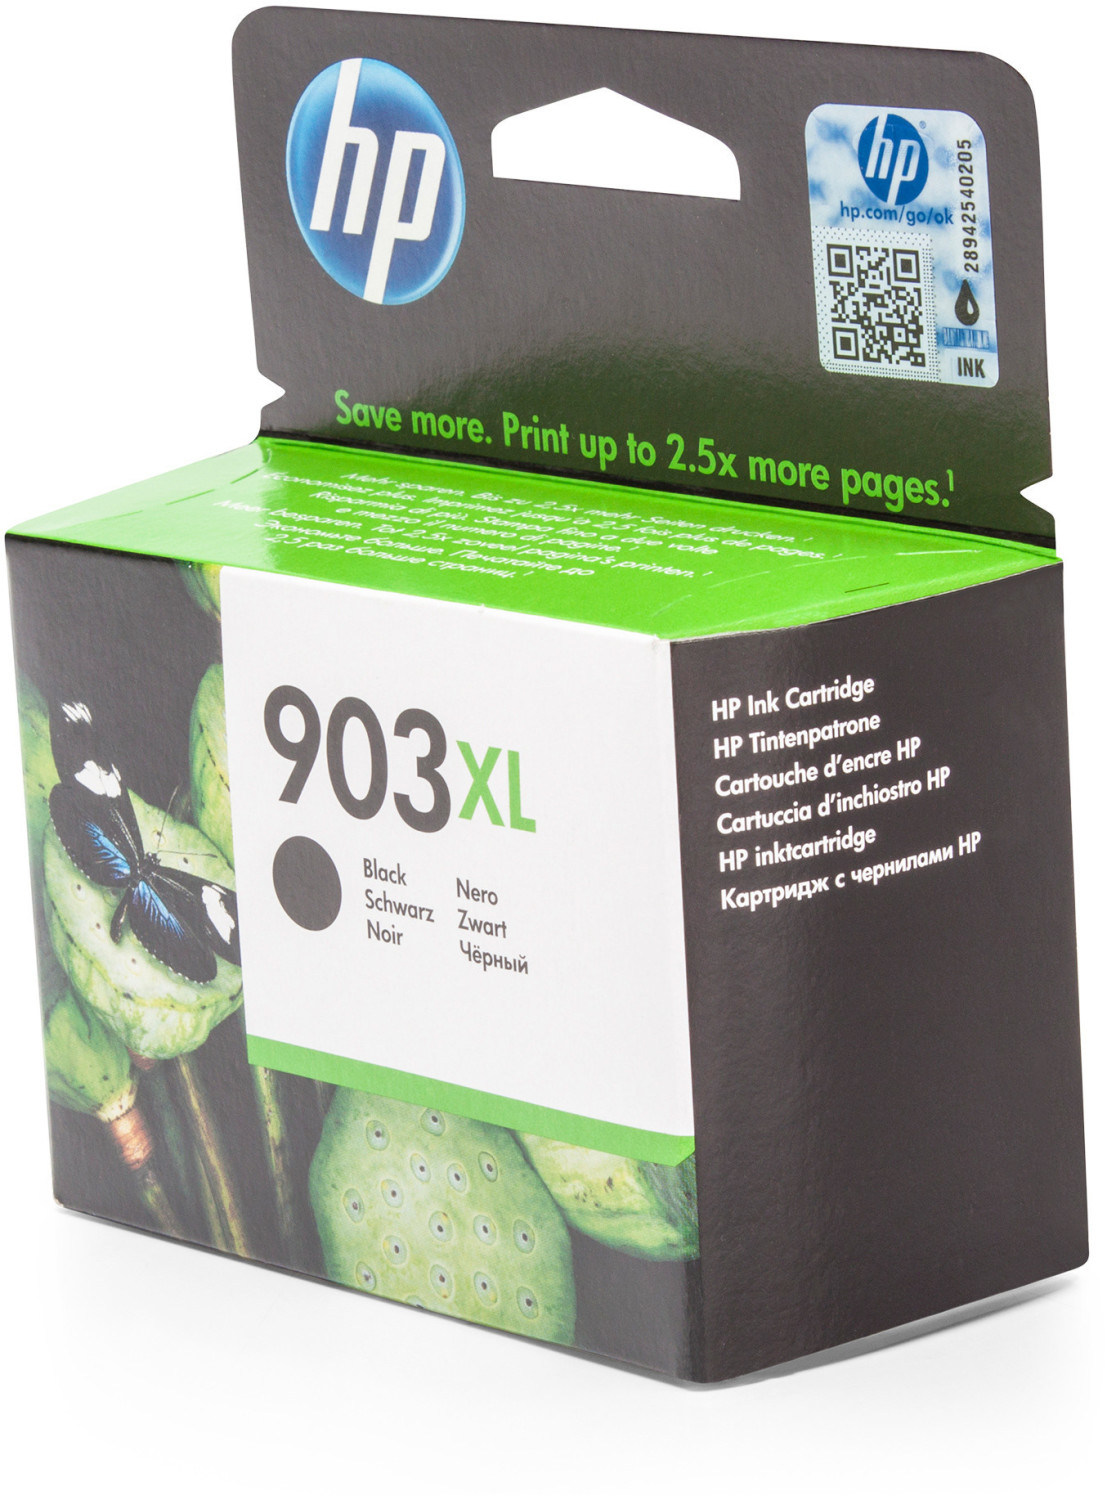 HP T6M15AE a € 39,47 (oggi)  Migliori prezzi e offerte su idealo